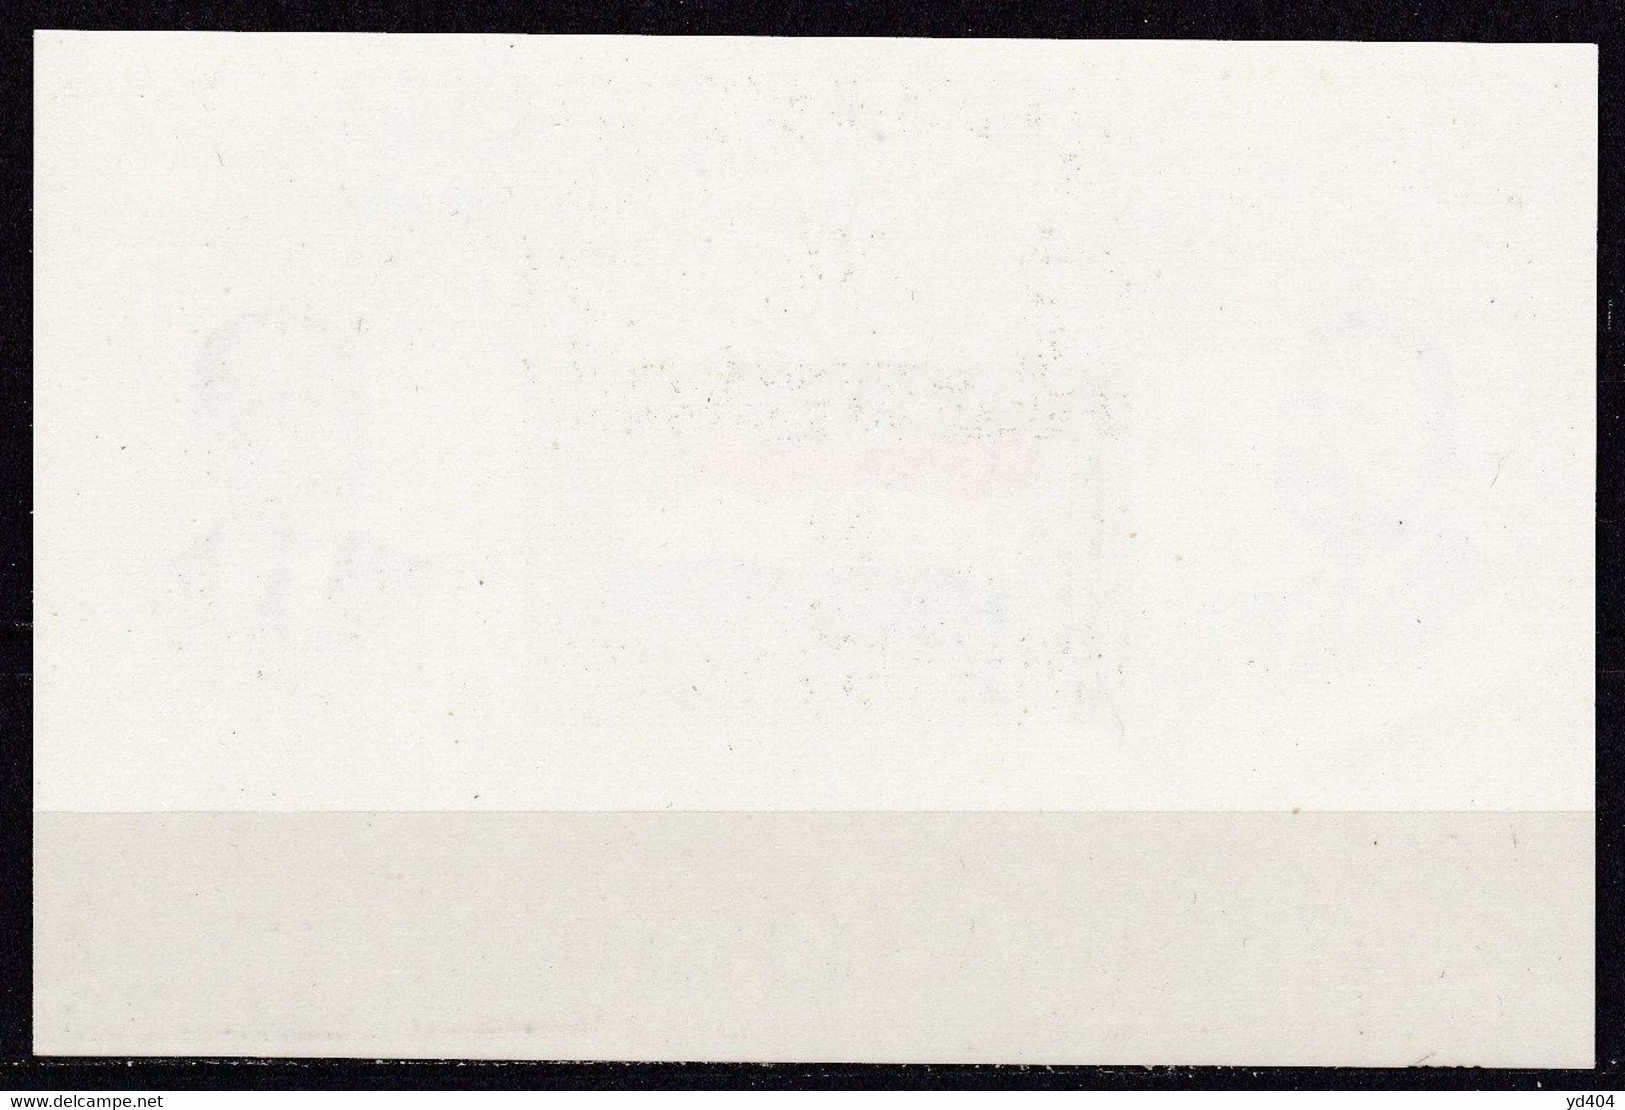 EG568 – EGYPTE – EGYPT – BLOCKS - 1972 - 20th   ANNIVERSARY OF THE REVOLUTION – SG # MS 931 MNH – CV 10,50 € - Blocks & Sheetlets